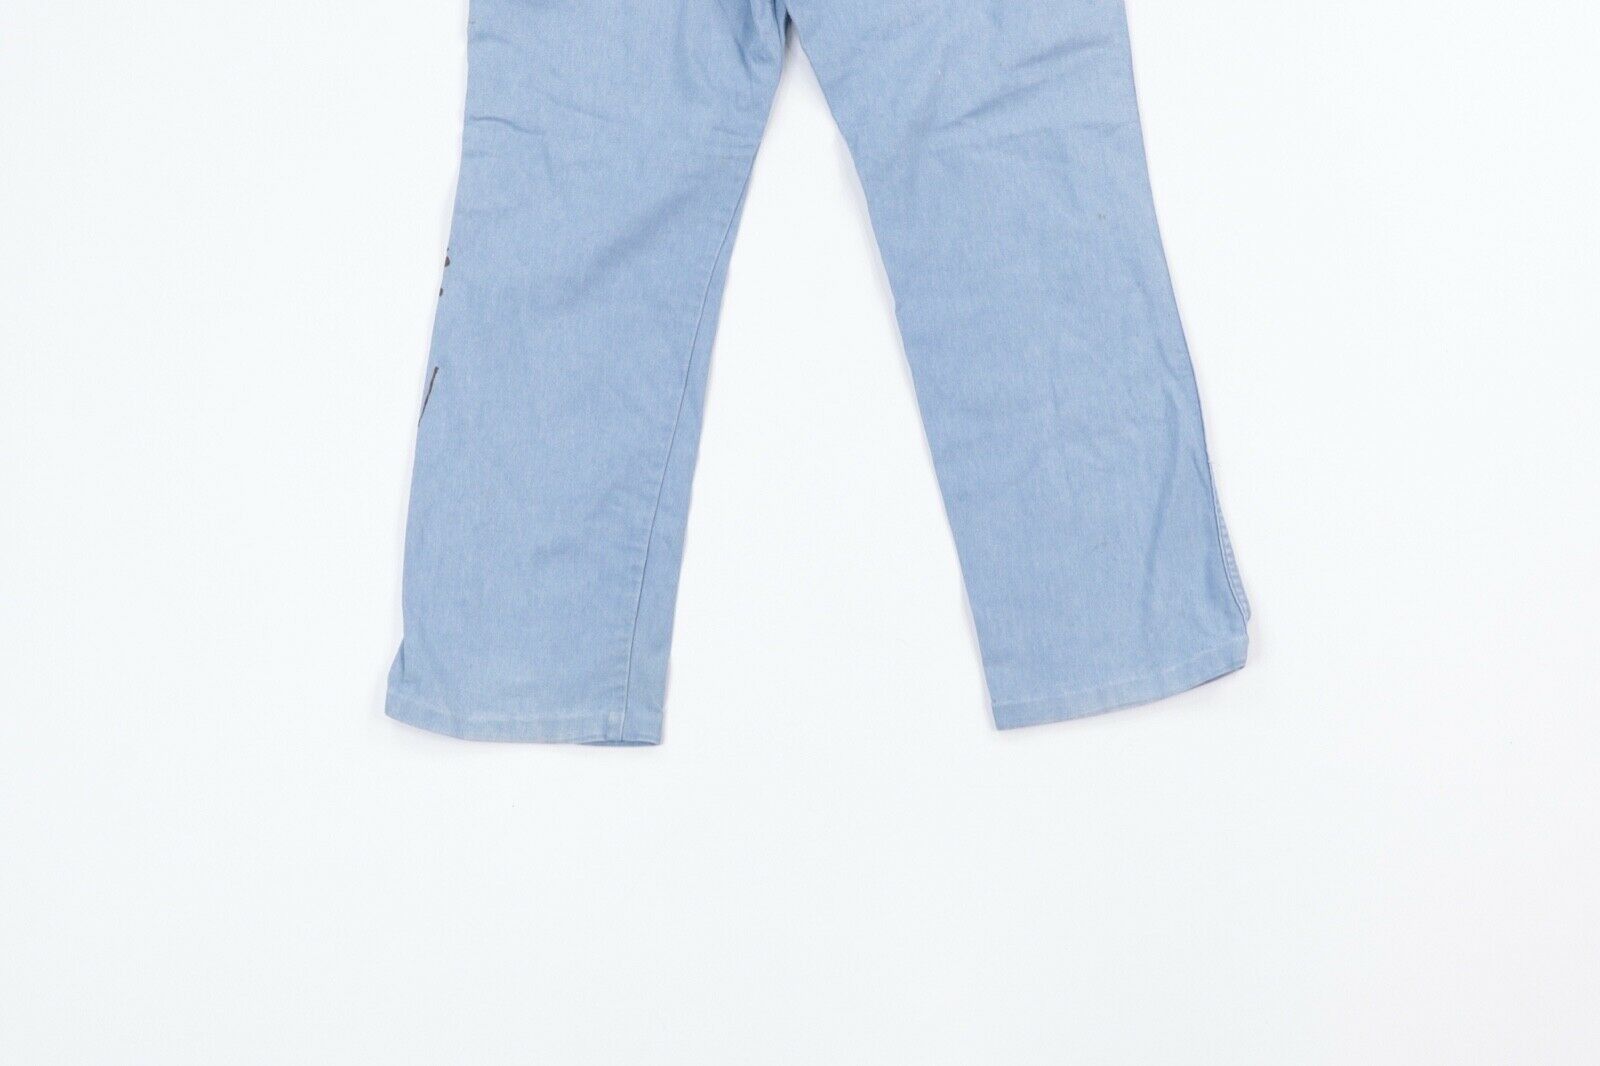 Vintage Vintage 80s Wrangler Thrashed Bootcut Denim Jeans Blue 36 Size US 36 / EU 52 - 9 Preview